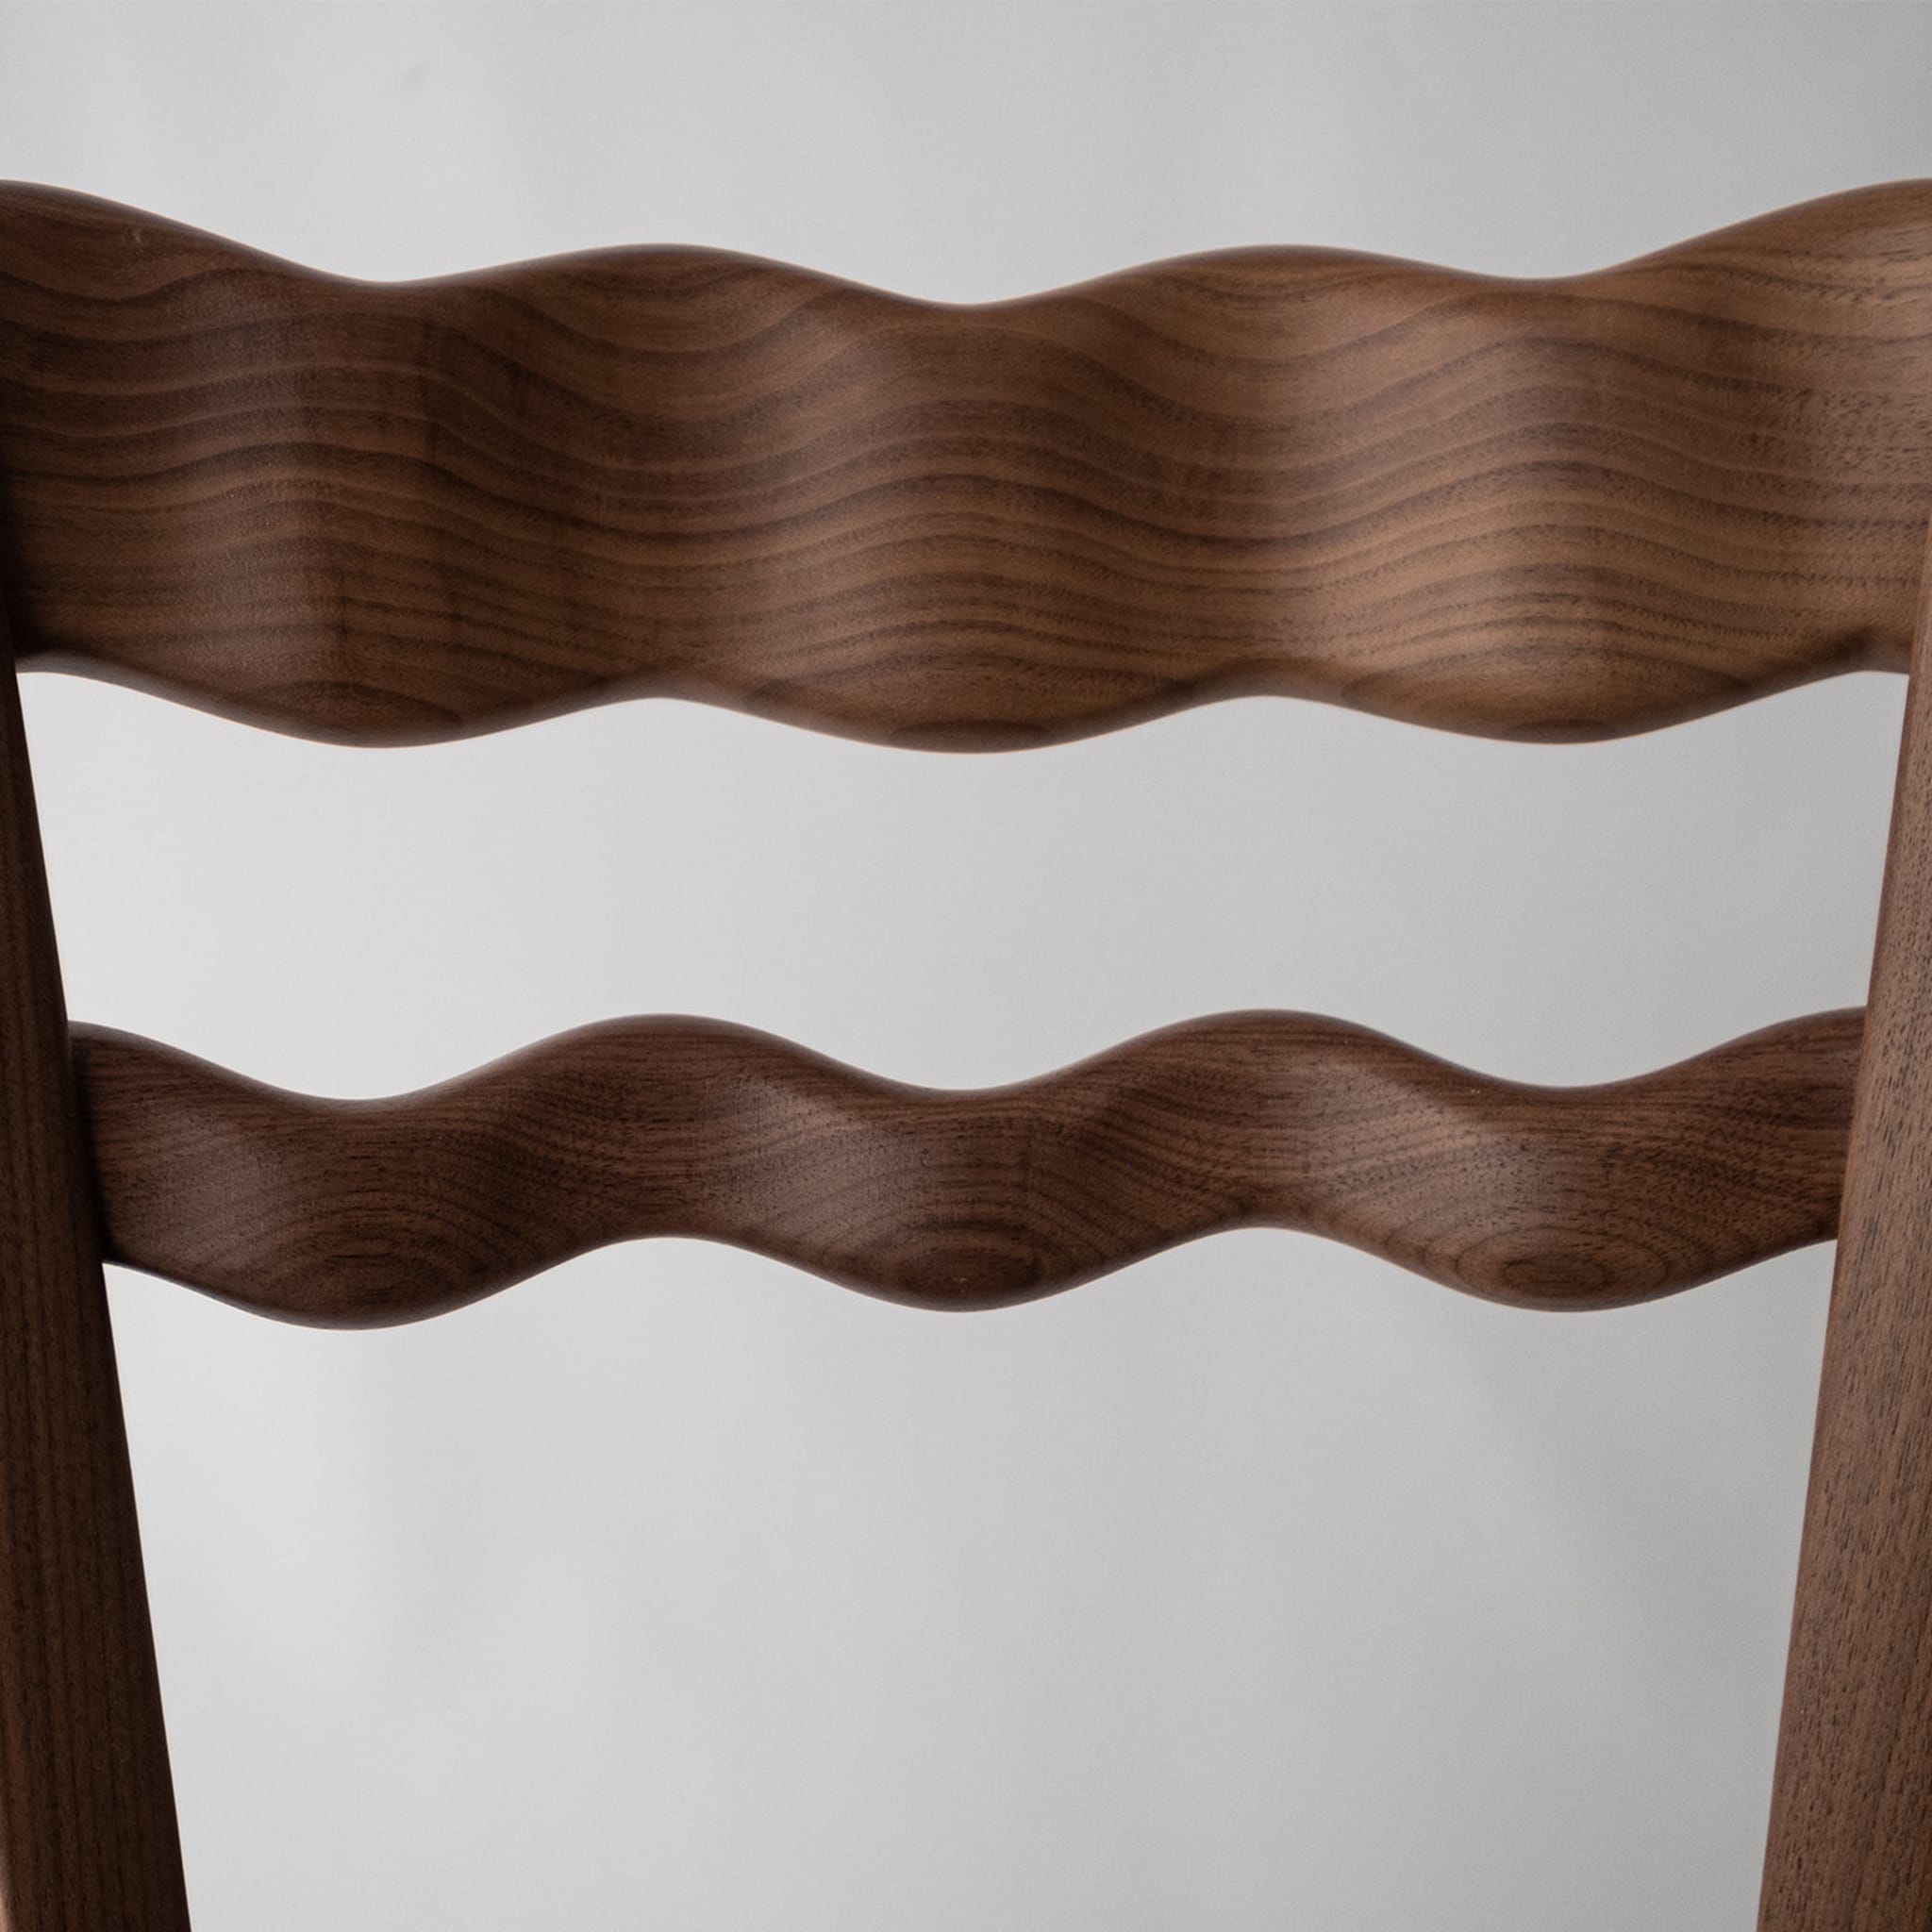 A Signurina Mora Chair by Antonio Aricò - Alternative view 5